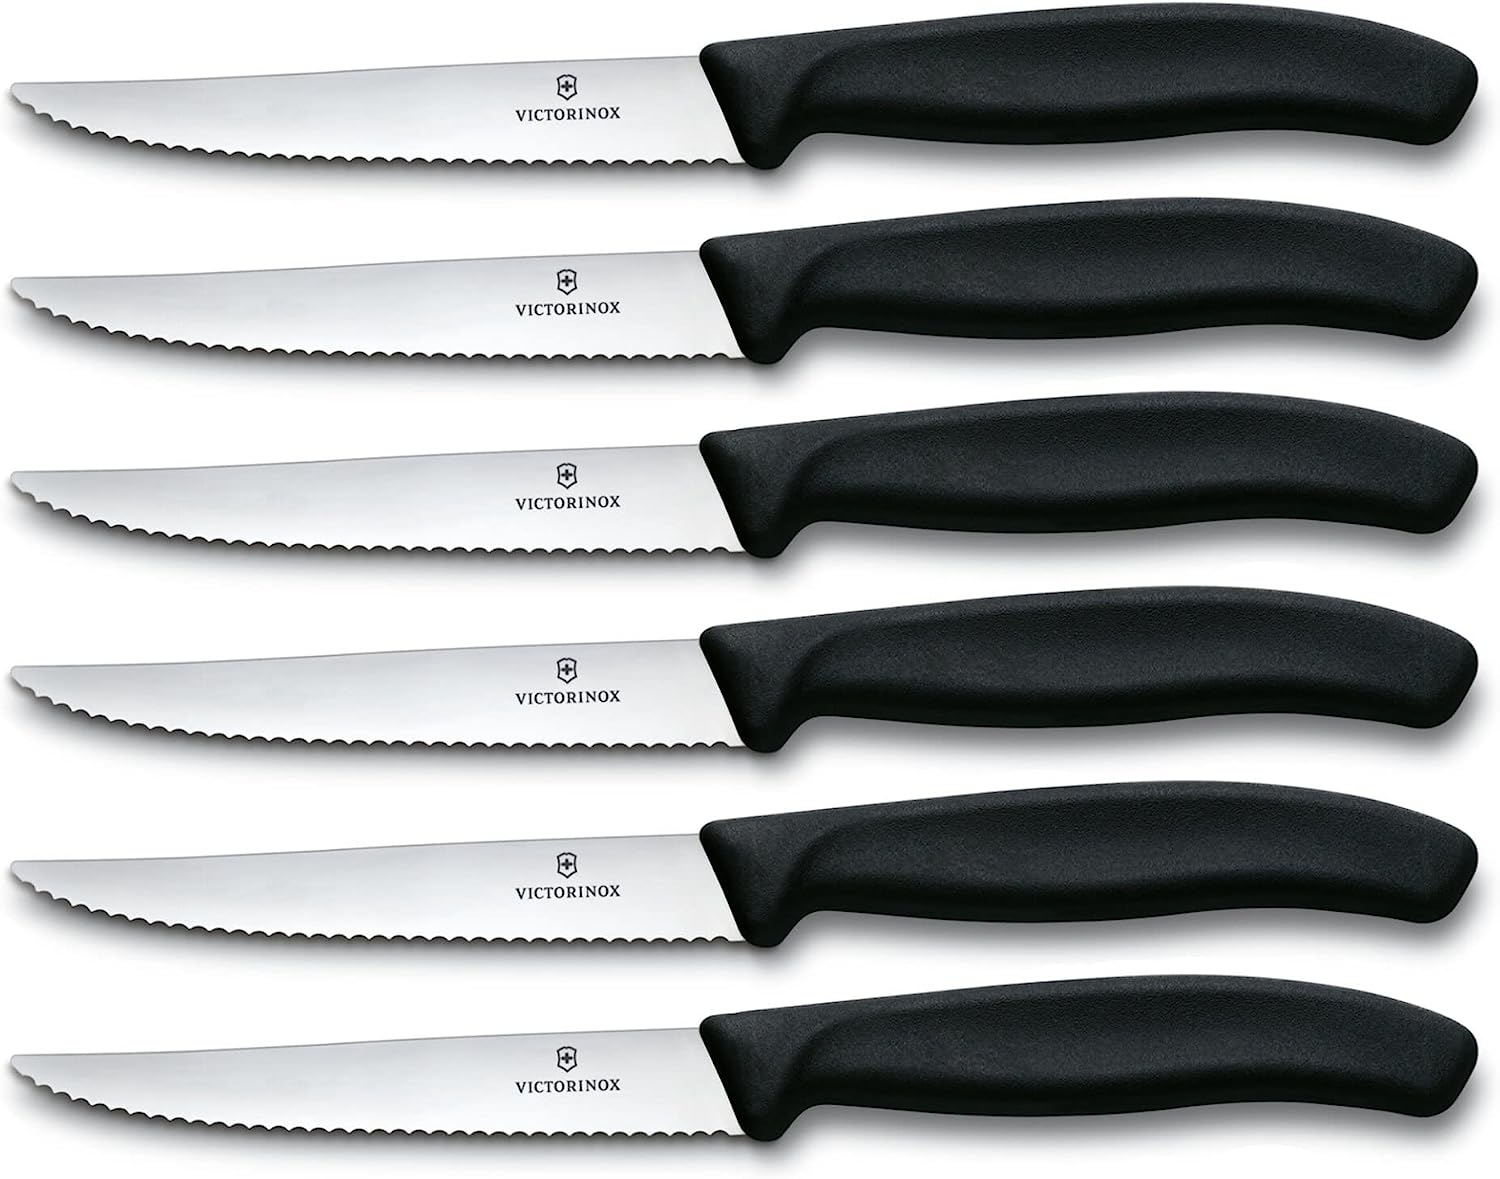 I migliori coltelli da bistecca: 7 consigliati da noi, coltelli, bistecca, Victorinox, Amazon